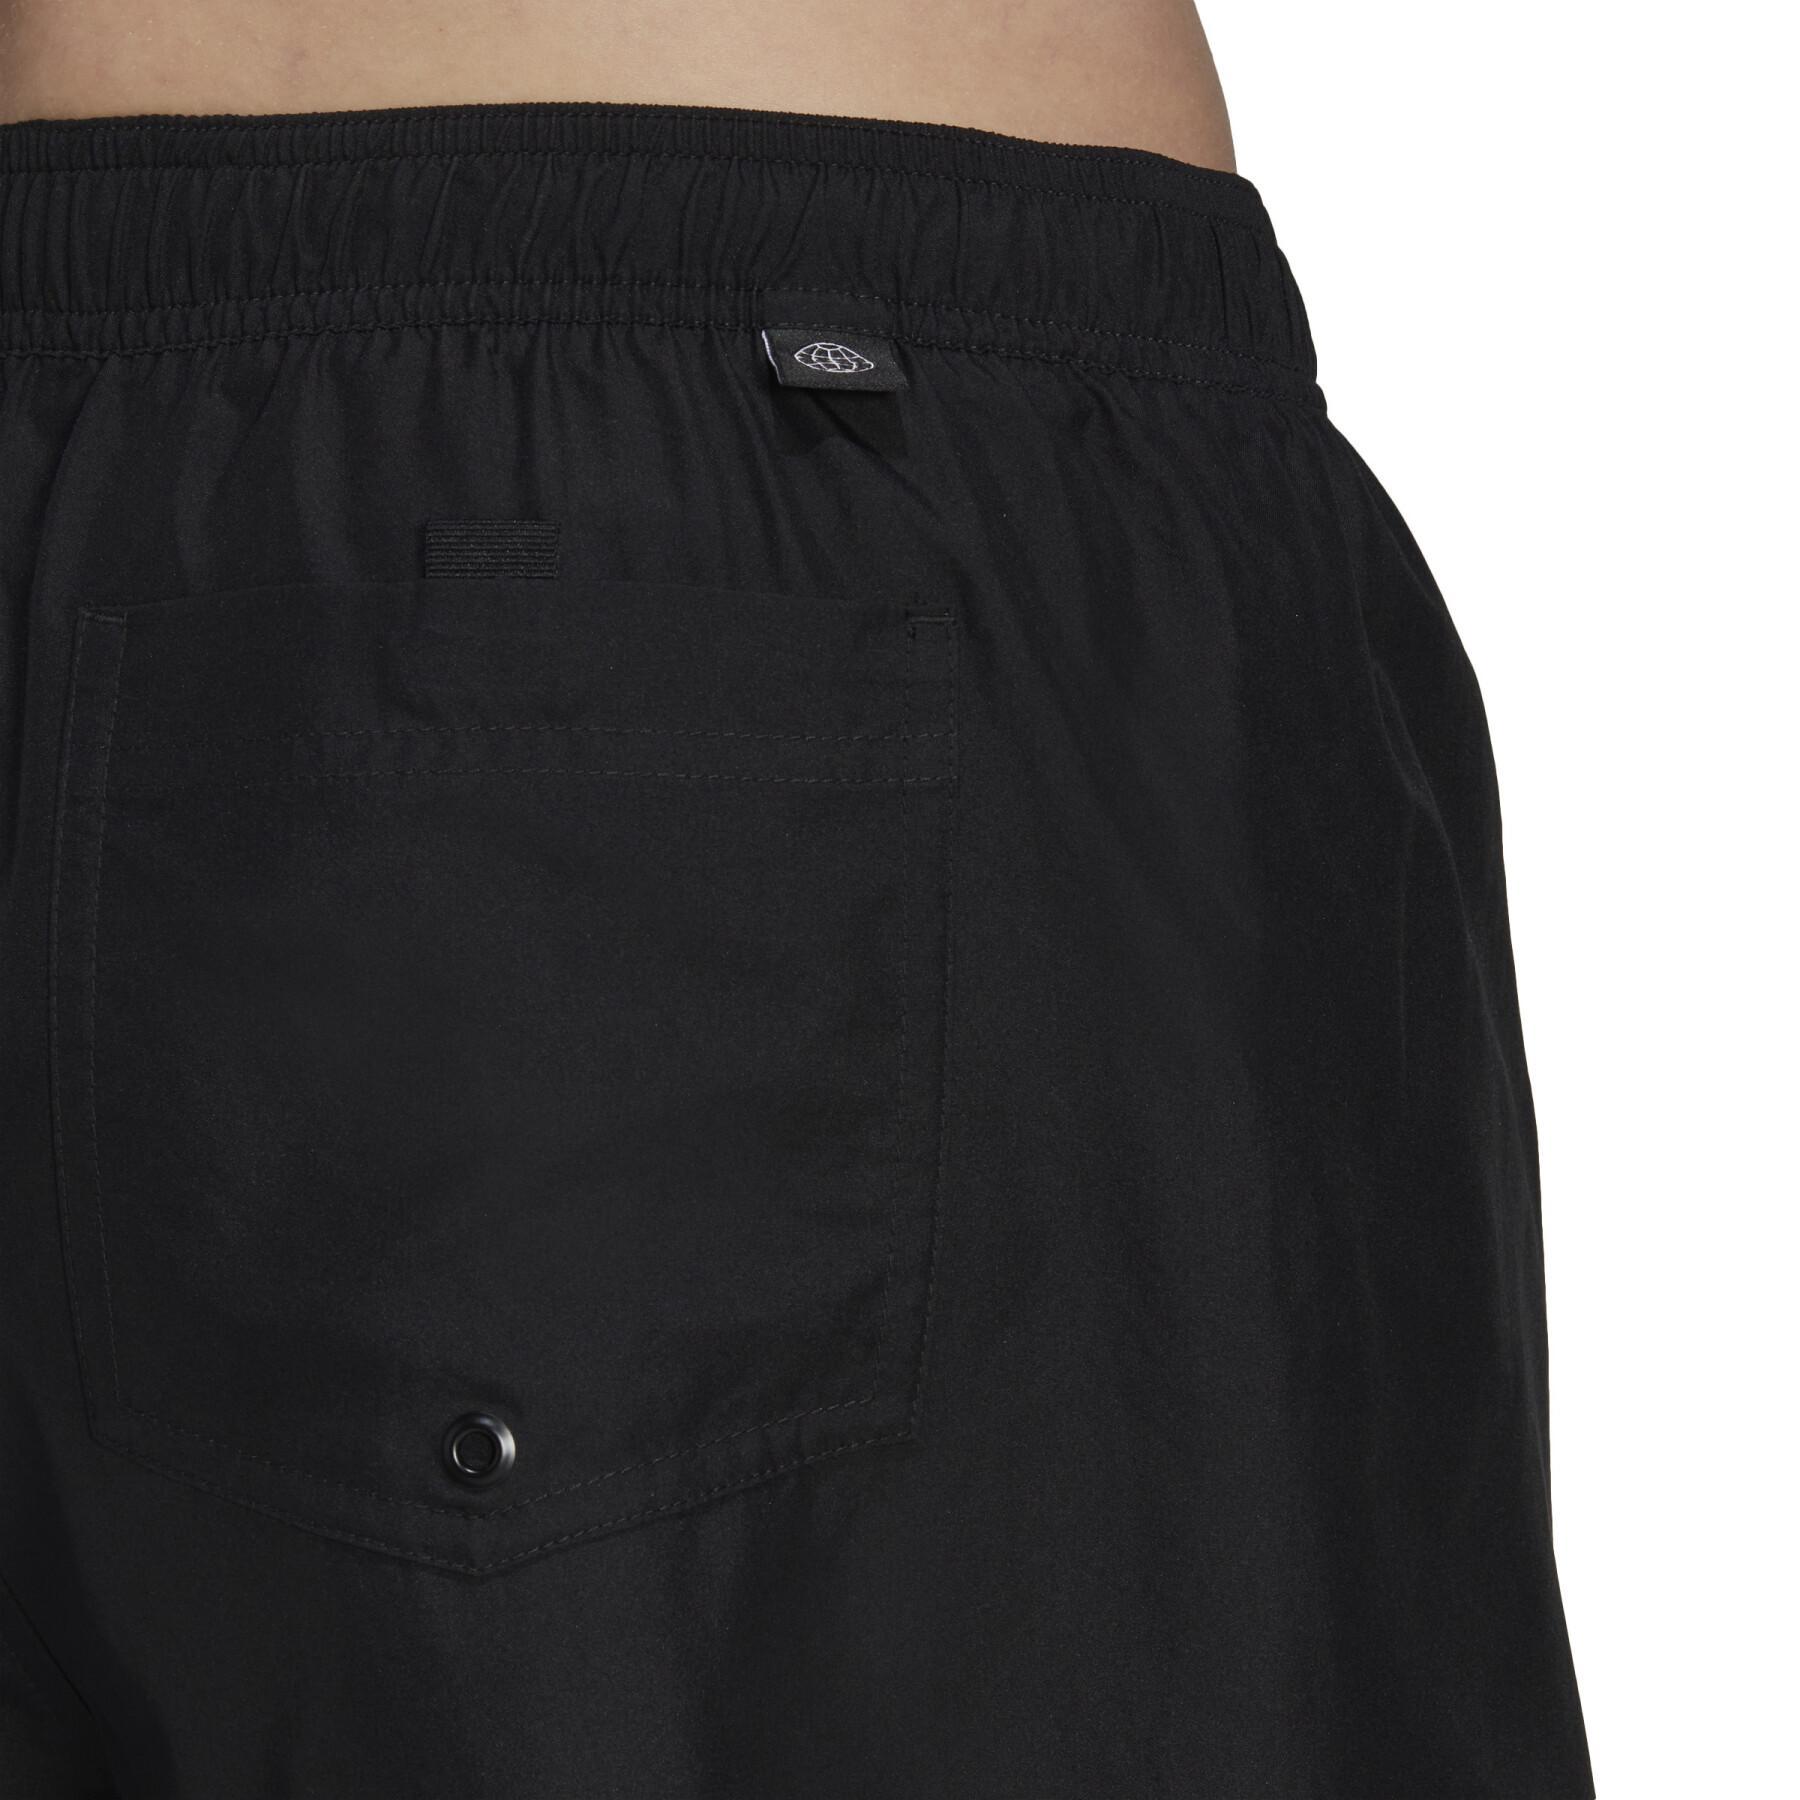 Pantalones cortos de baño adidas Logo Clx